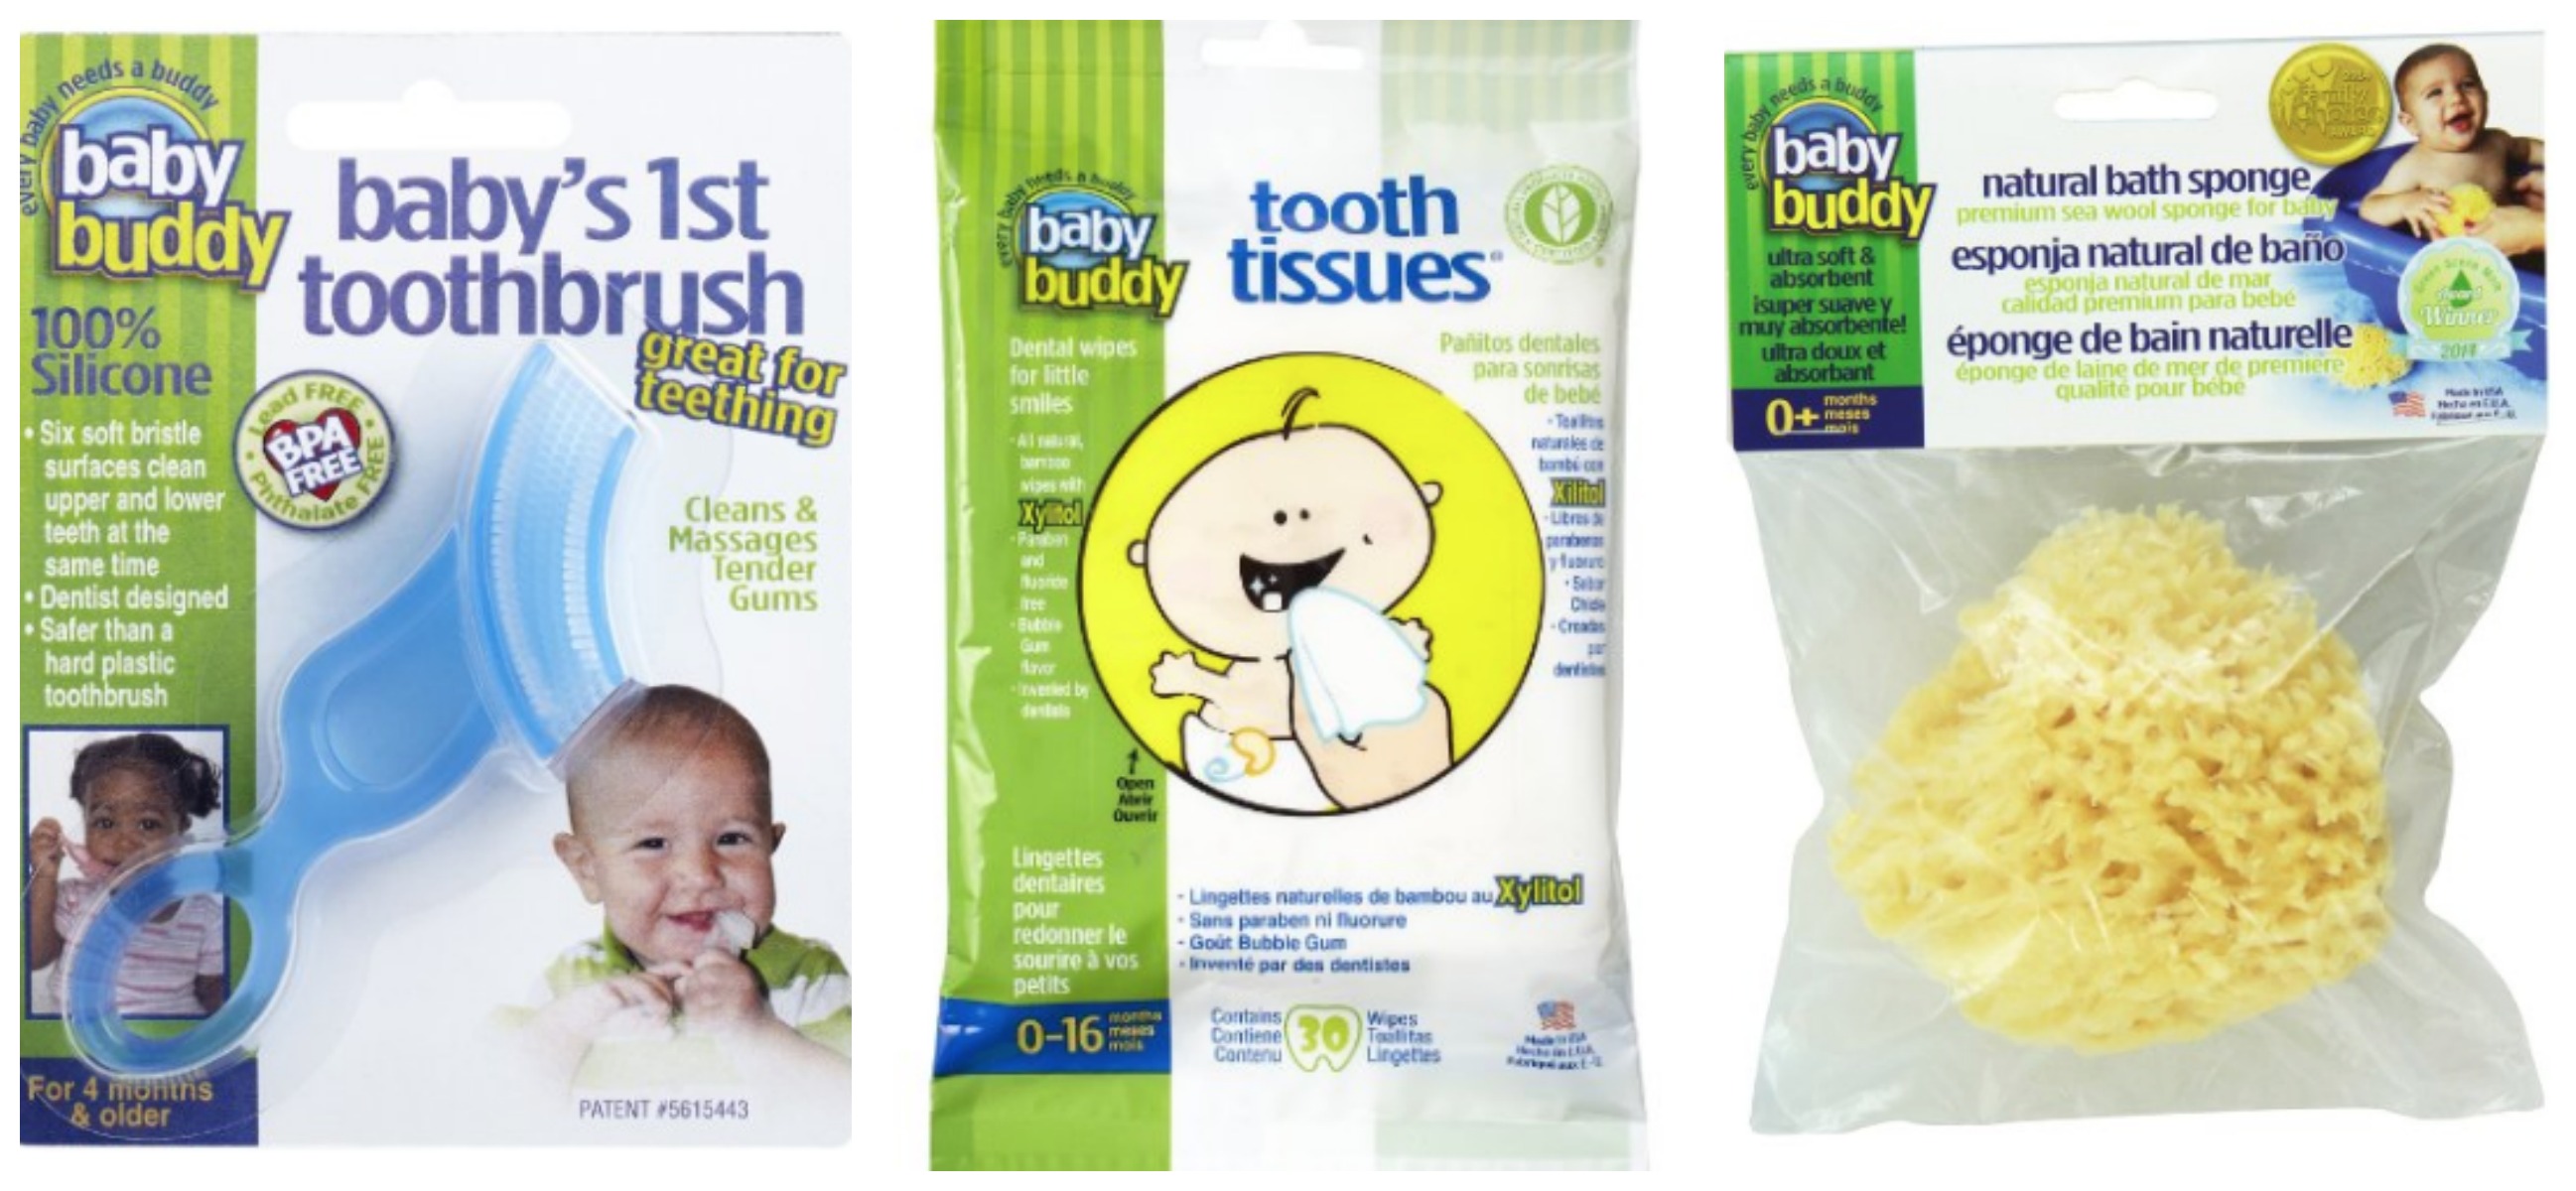 Baby Buddy Toothbrush, Tissues & Bath Sponge all for $6.99! (Reg. $19.97)